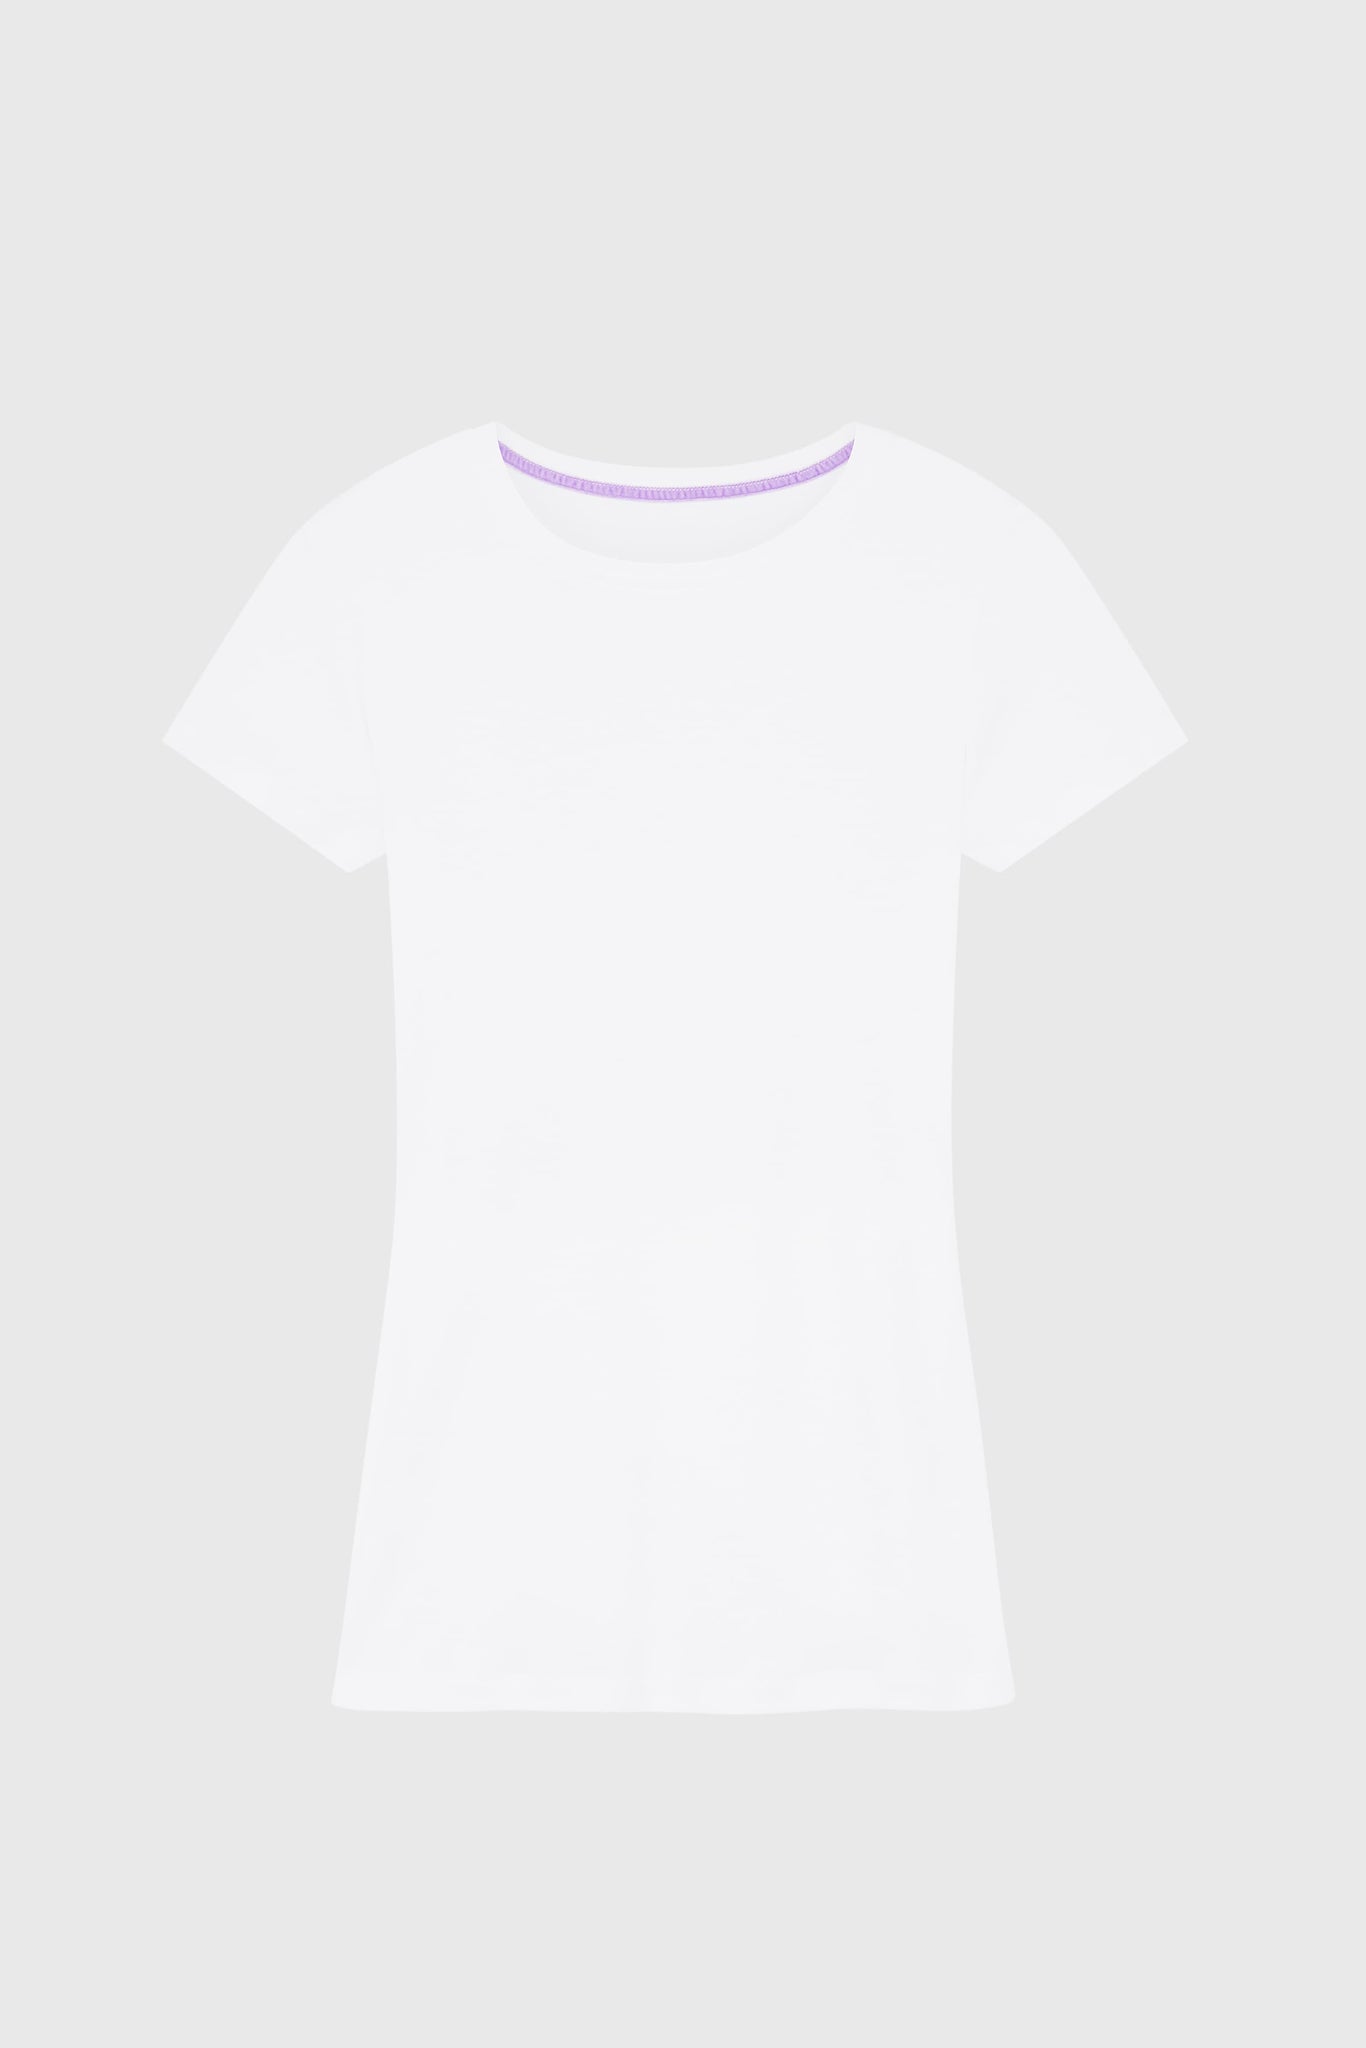 Prisma Tee Fit Lavender Bra - Moulded & Concealed Kurthi / T-Shirt Bra